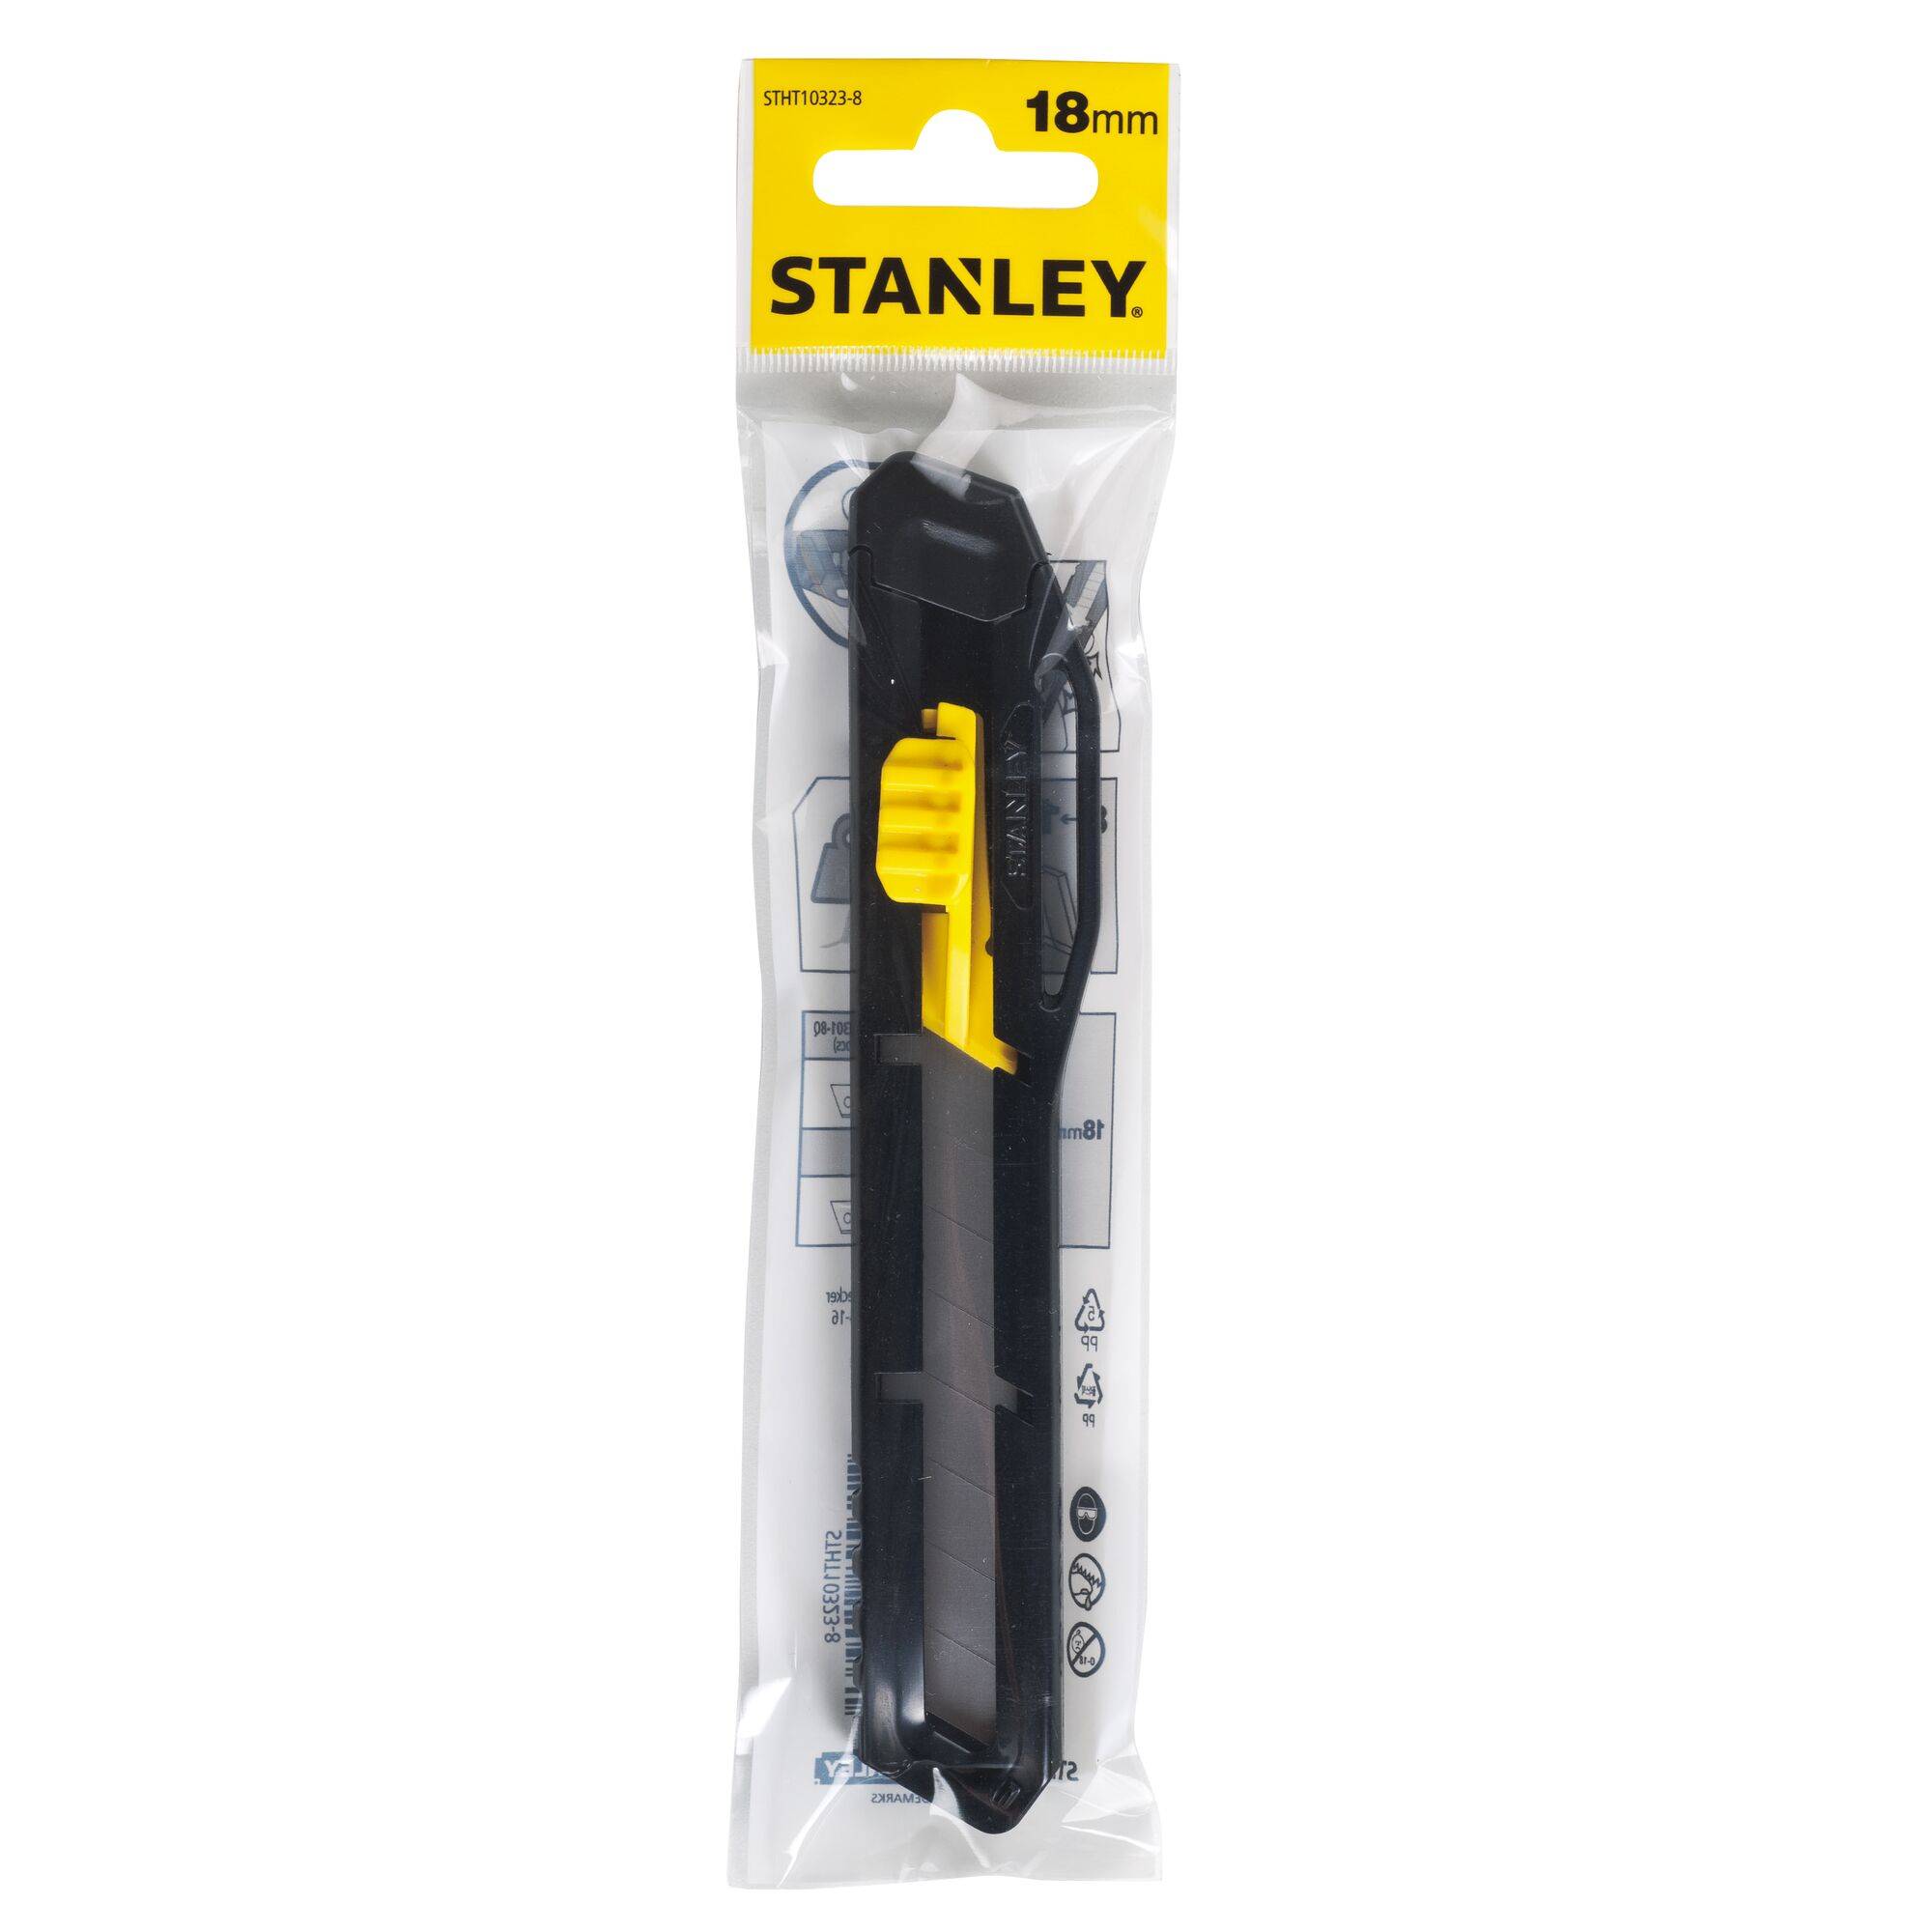 STANLEY BLACK & DECKER STANLEY STHT10323-8 Cutter 18mm Standard 1 St.